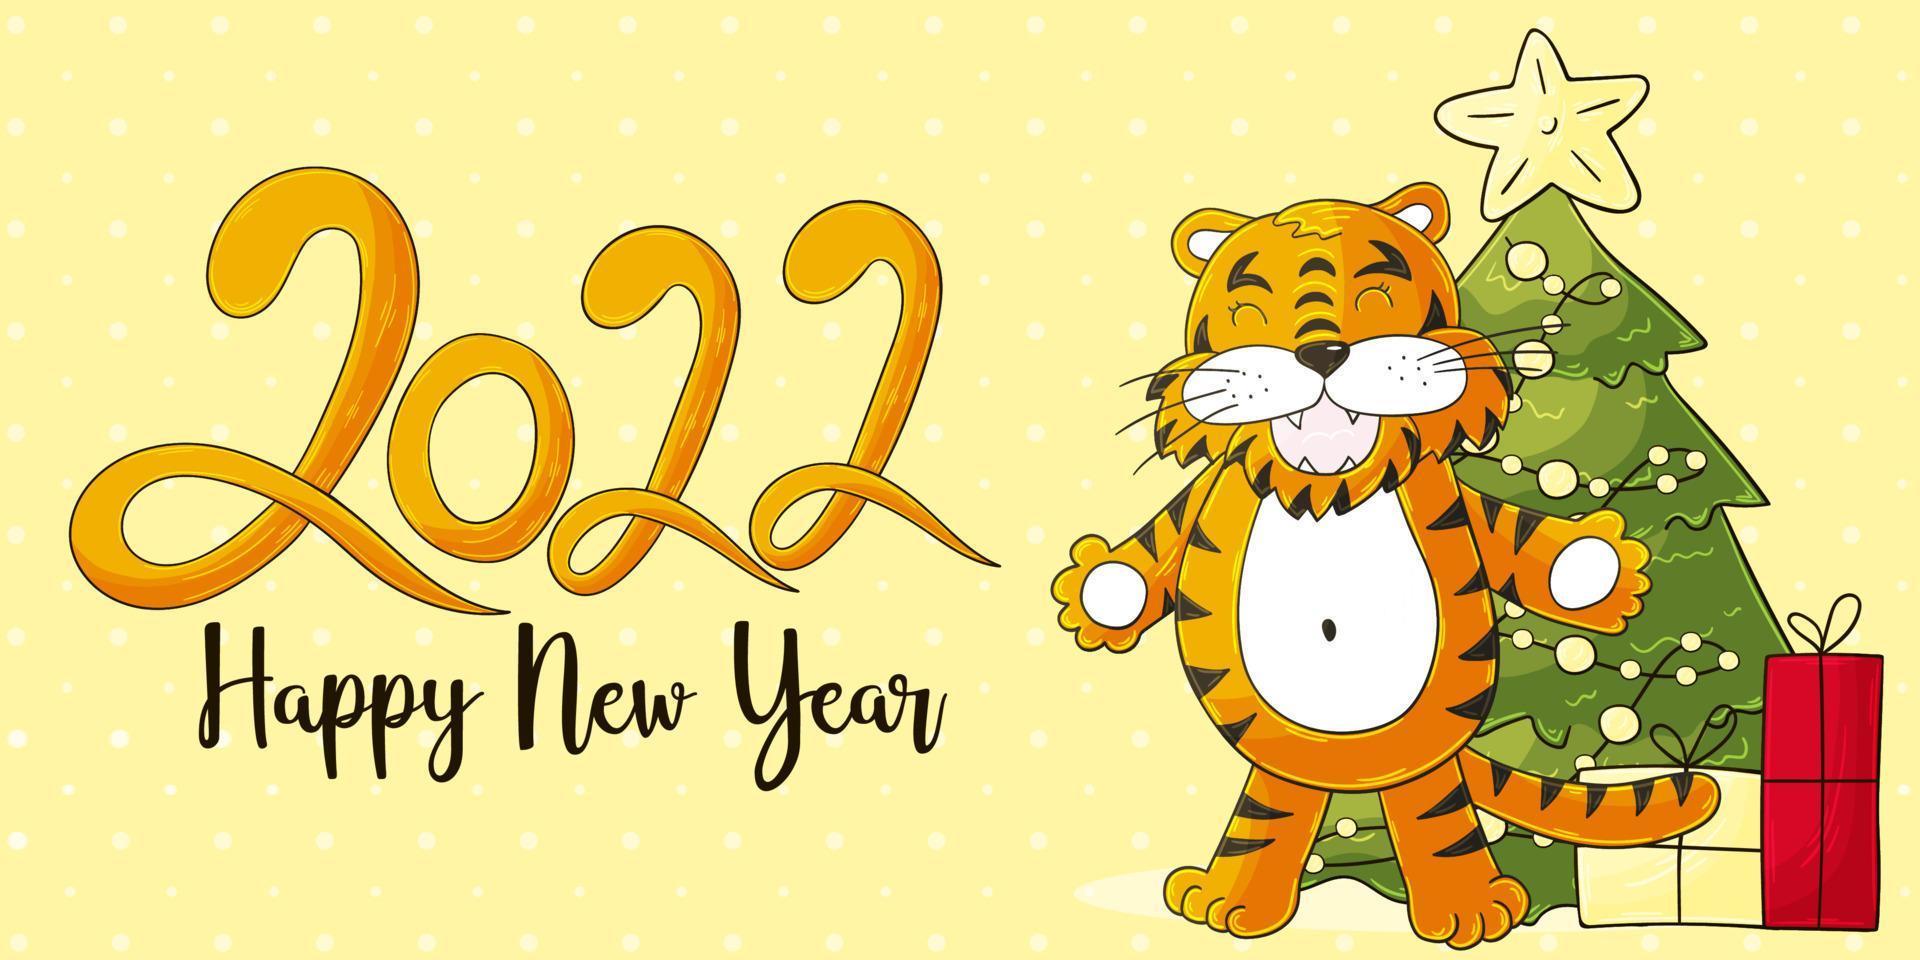 Con hổ hùng mạnh trong họa tiết đặc trưng cho năm 2022 đang chờ đón bạn. Mời bạn ghé thăm và chiêm ngưỡng!